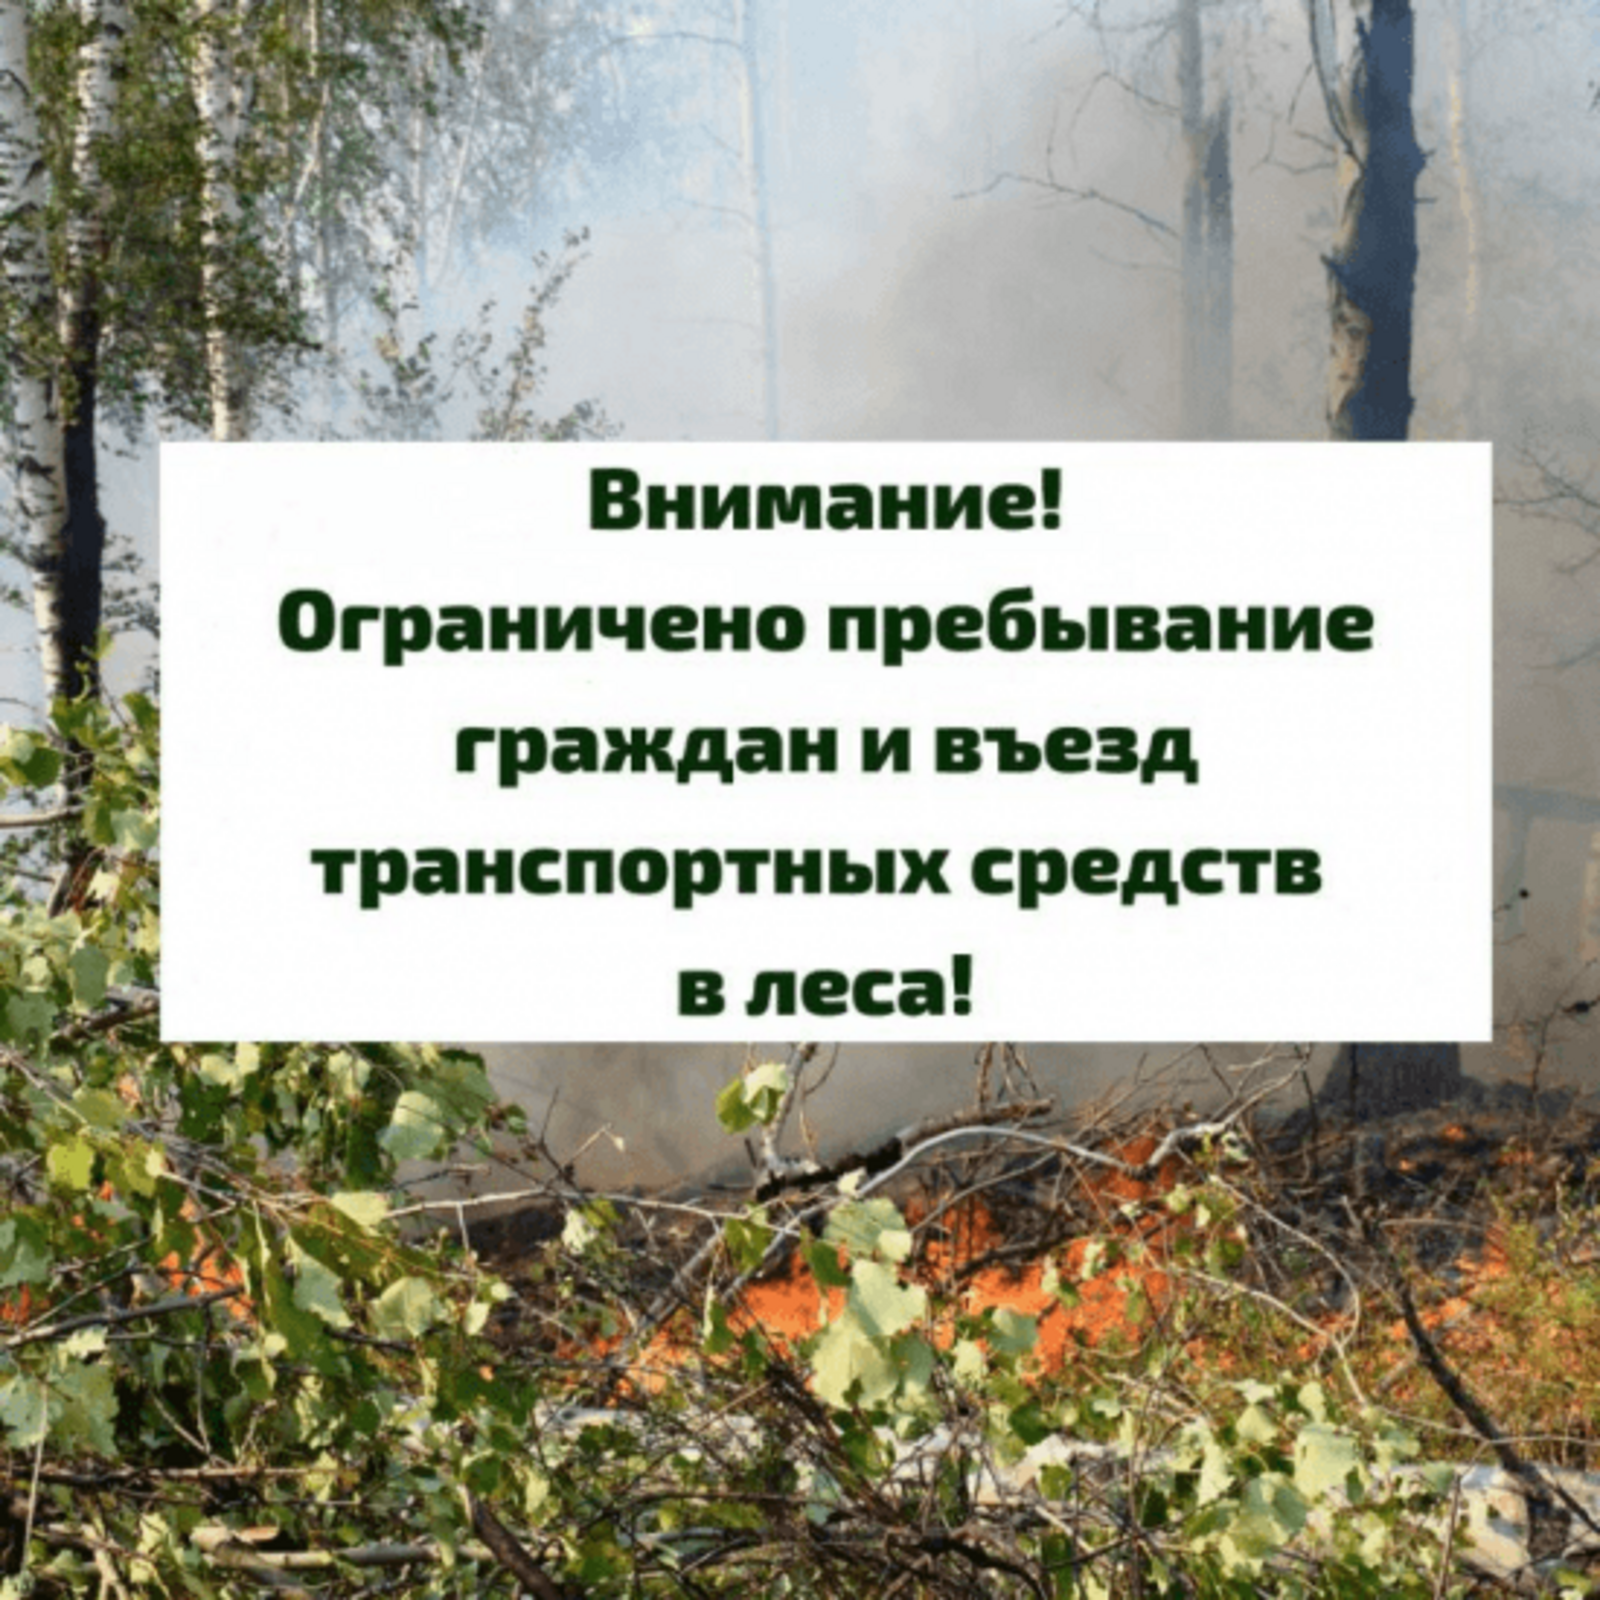 В лесах Республики Башкортостан введено ограничение пребывания граждан и въезда в них транспортных средств